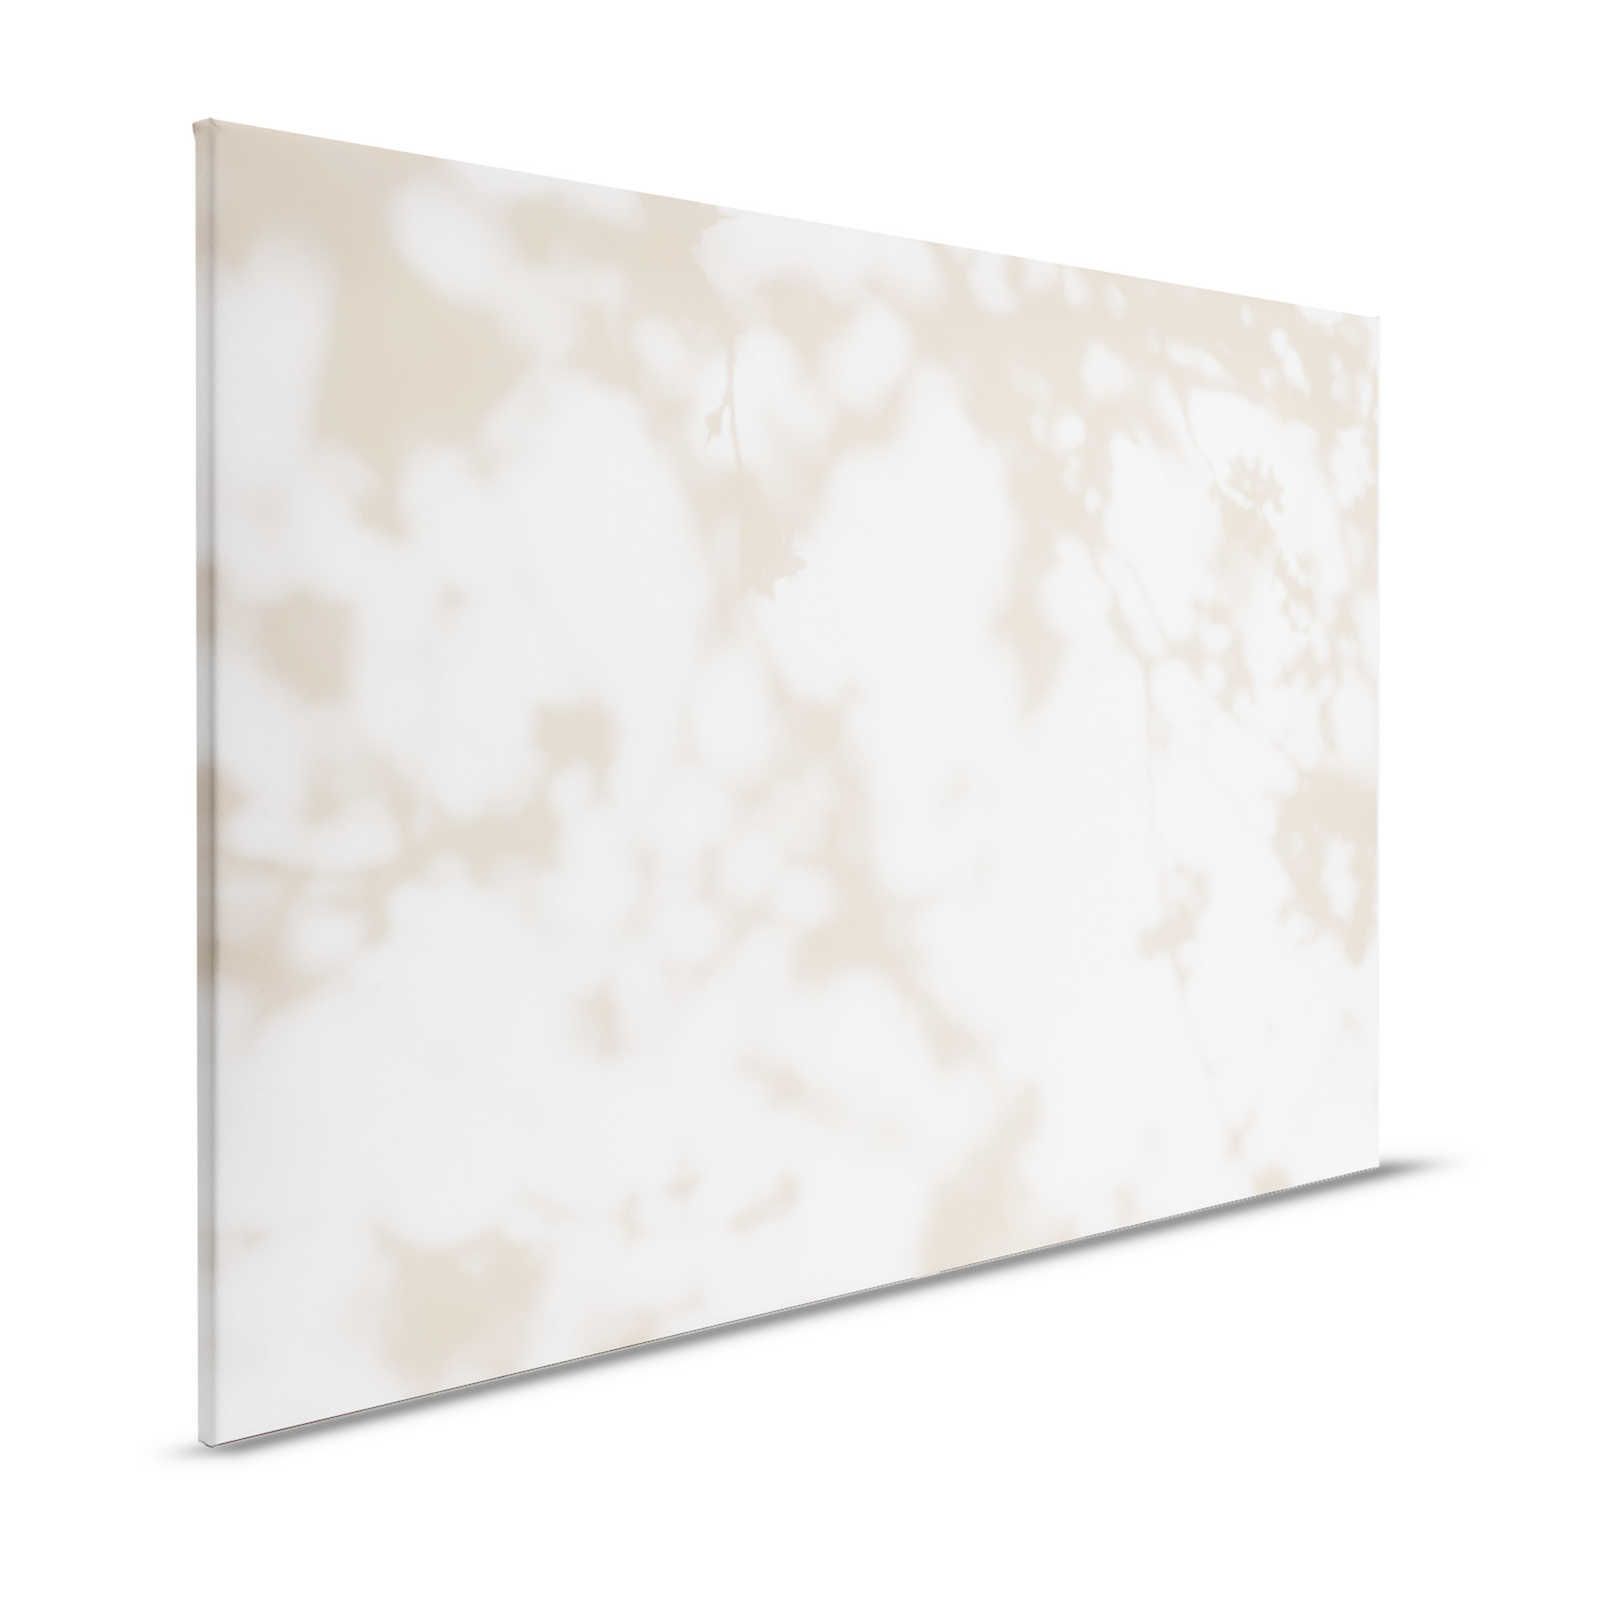 Lichtkamer 3 - Canvas schilderij Nature Shadows in Beige & White - 1.20 m x 0.80 m
